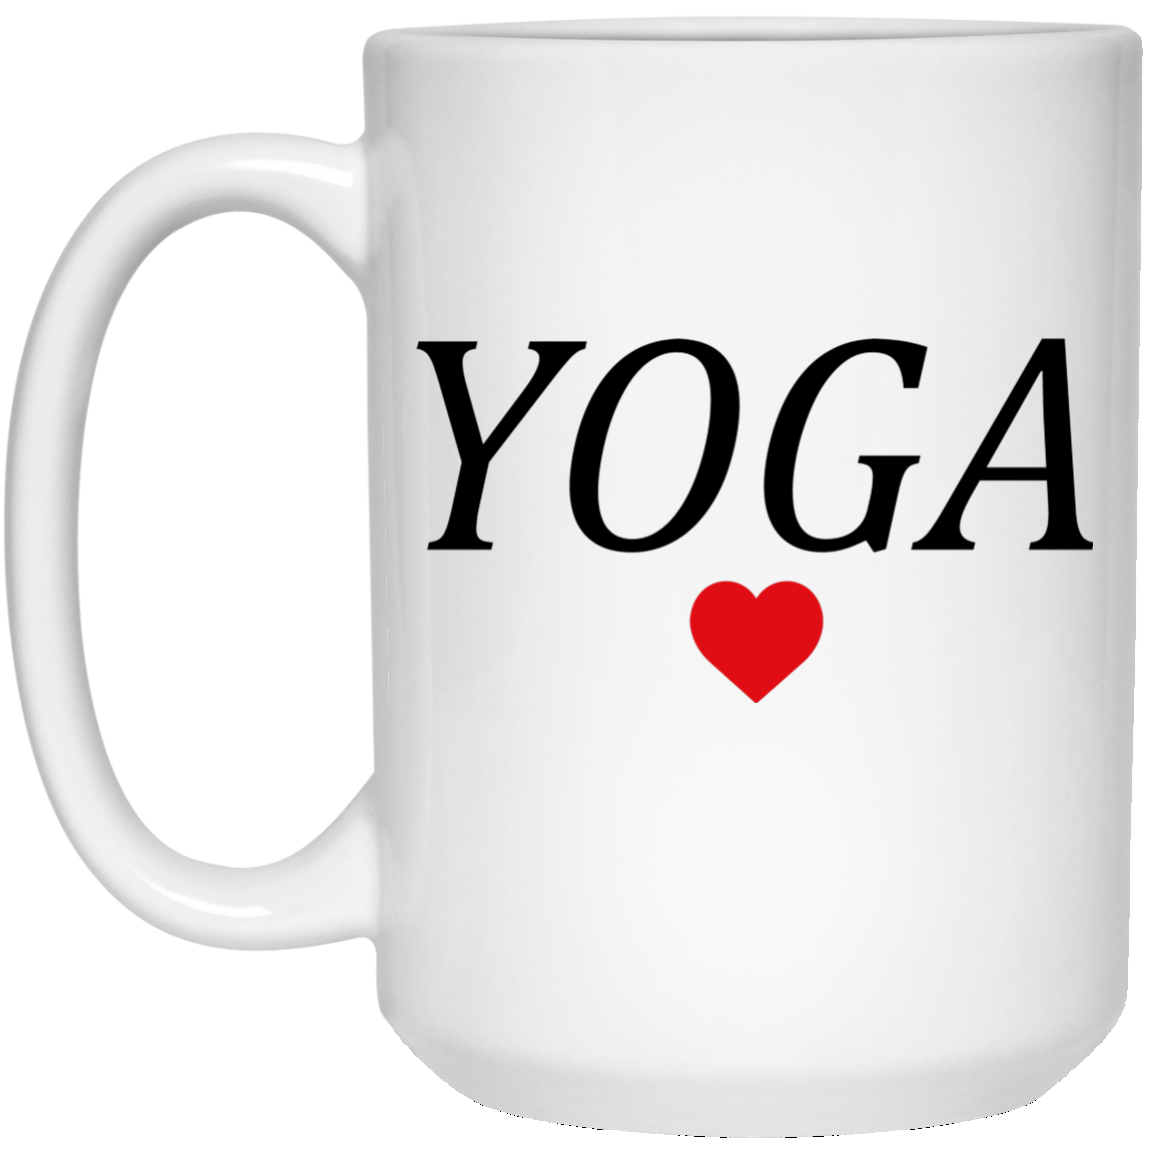 Yoga Sport Mug